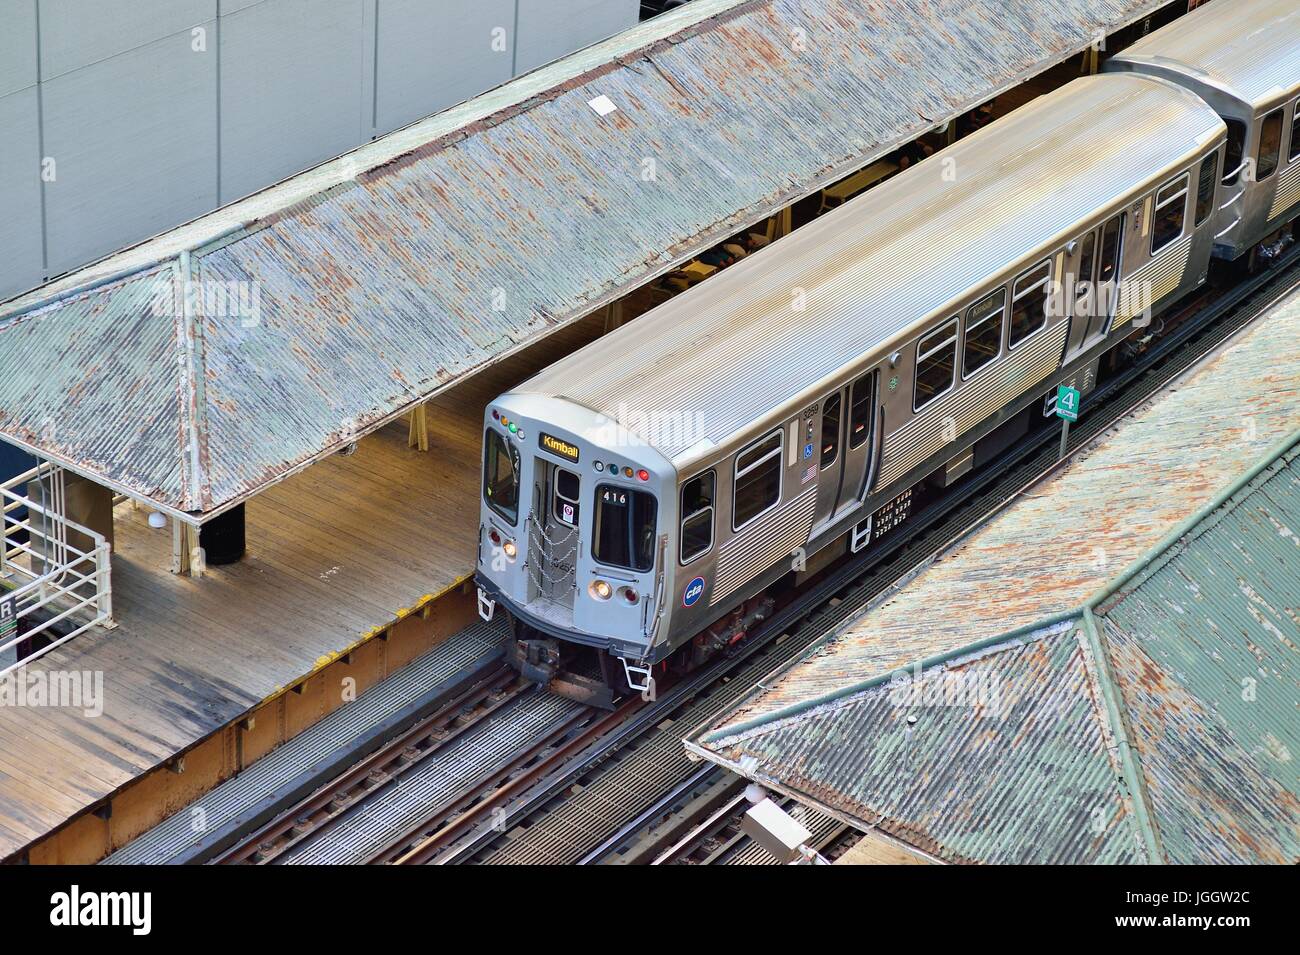 An den Anschlüssen, die den Loop, Chicagos berühmten Downtown Bereich definiert, ein CTA rapid transit Train angehalten, an einer Station. Chicago, Illinois, USA. Stockfoto